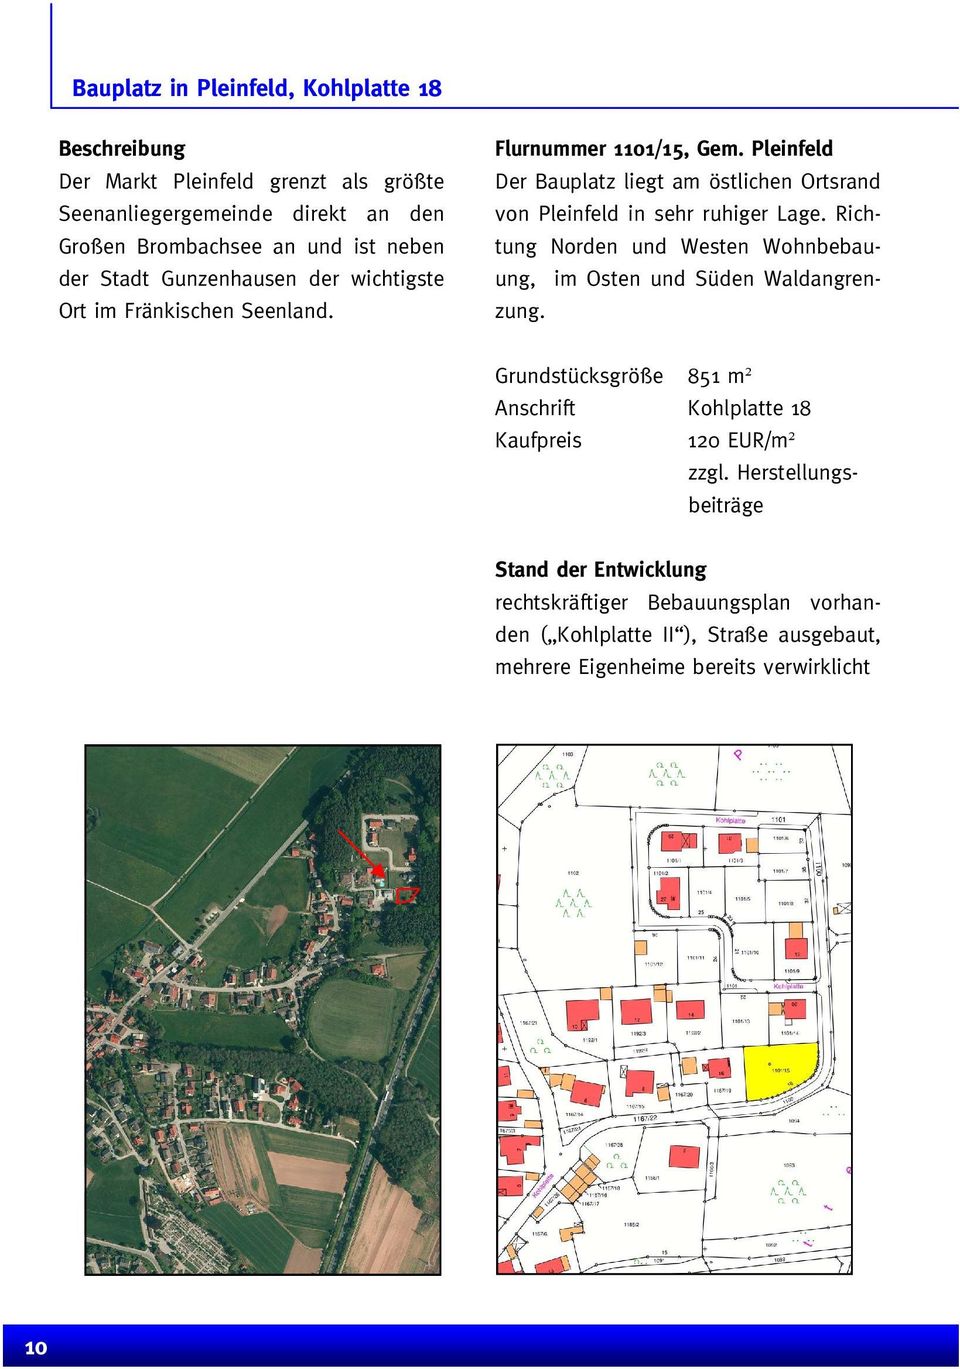 Pleinfeld Der Bauplatz liegt am östlichen Ortsrand von Pleinfeld in sehr ruhiger Lage. Richtung Norden und Westen Wohnbebauung, im Osten und Süden Waldangrenzung.